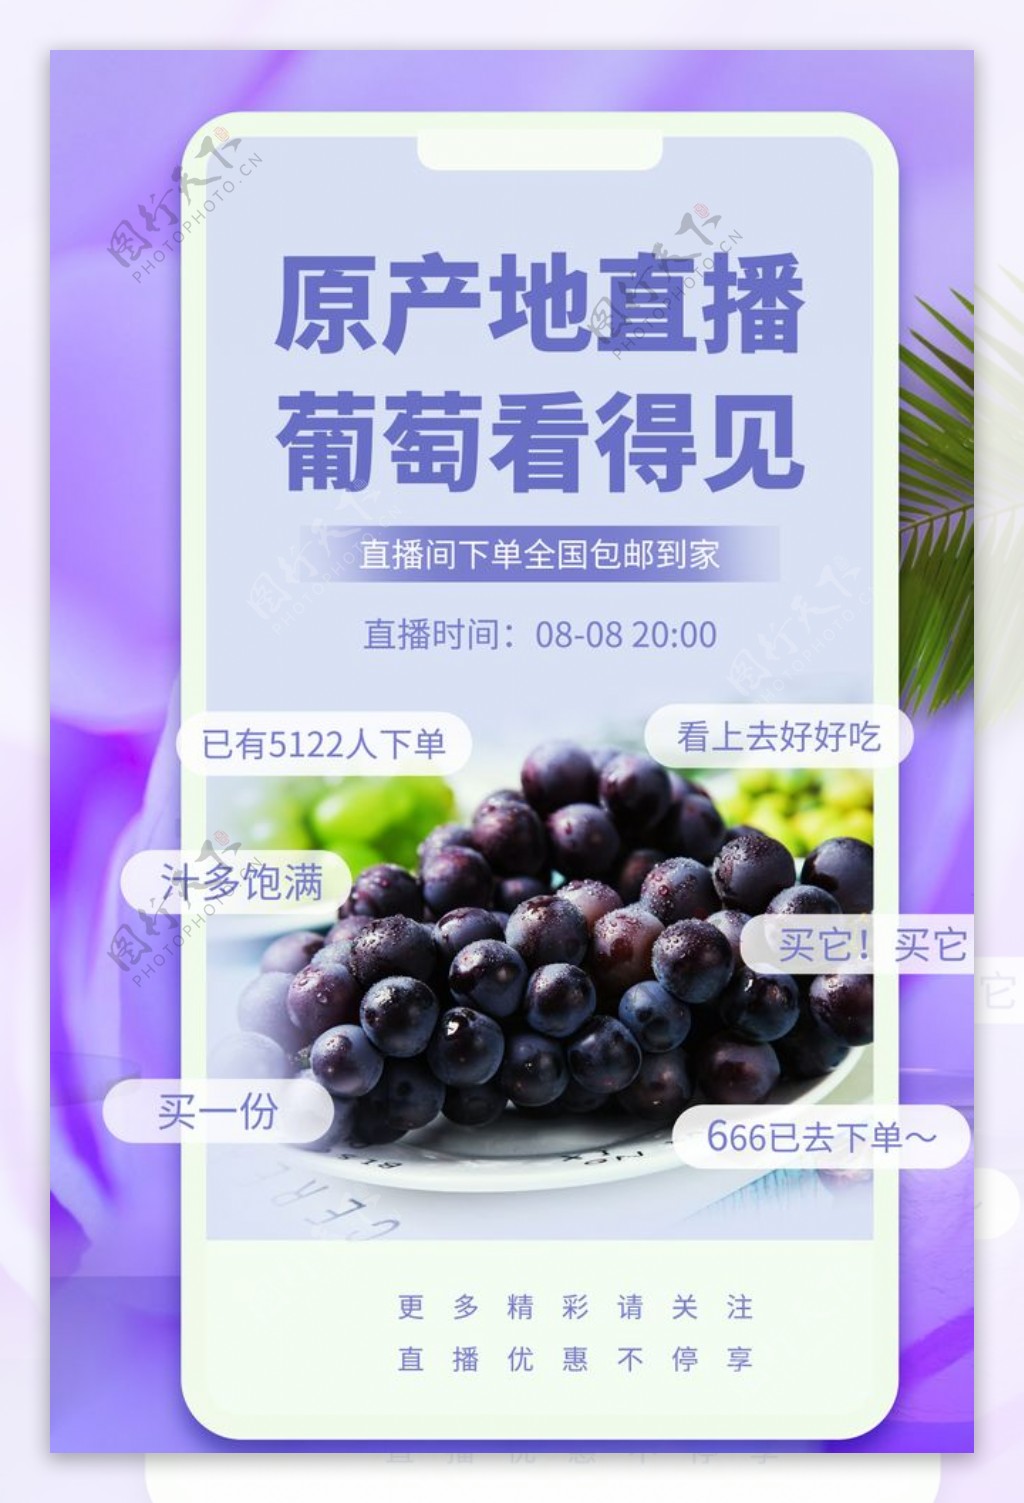 葡萄水果直播促销活动宣传海报